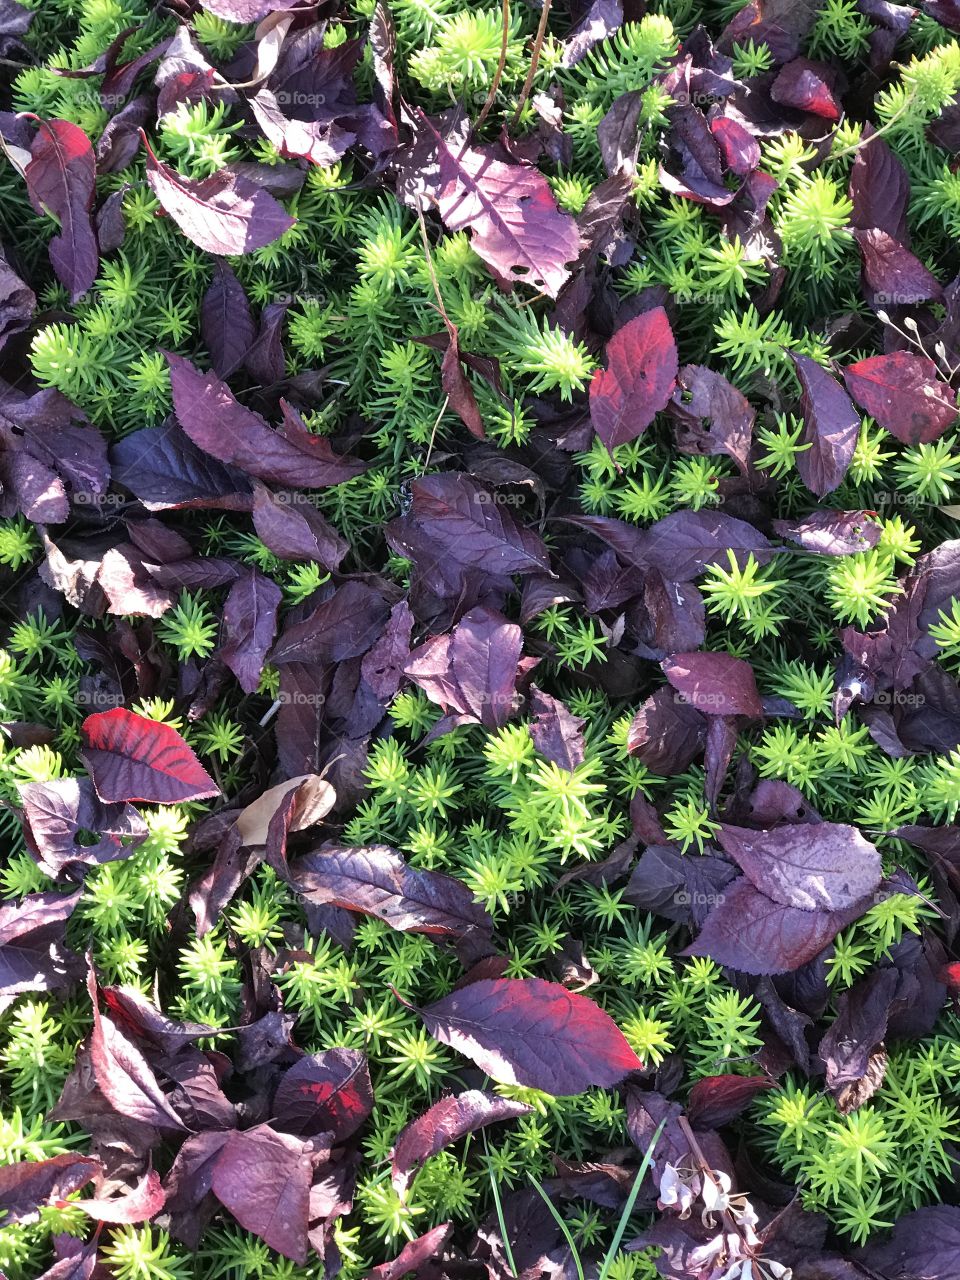 Deep purple leaves